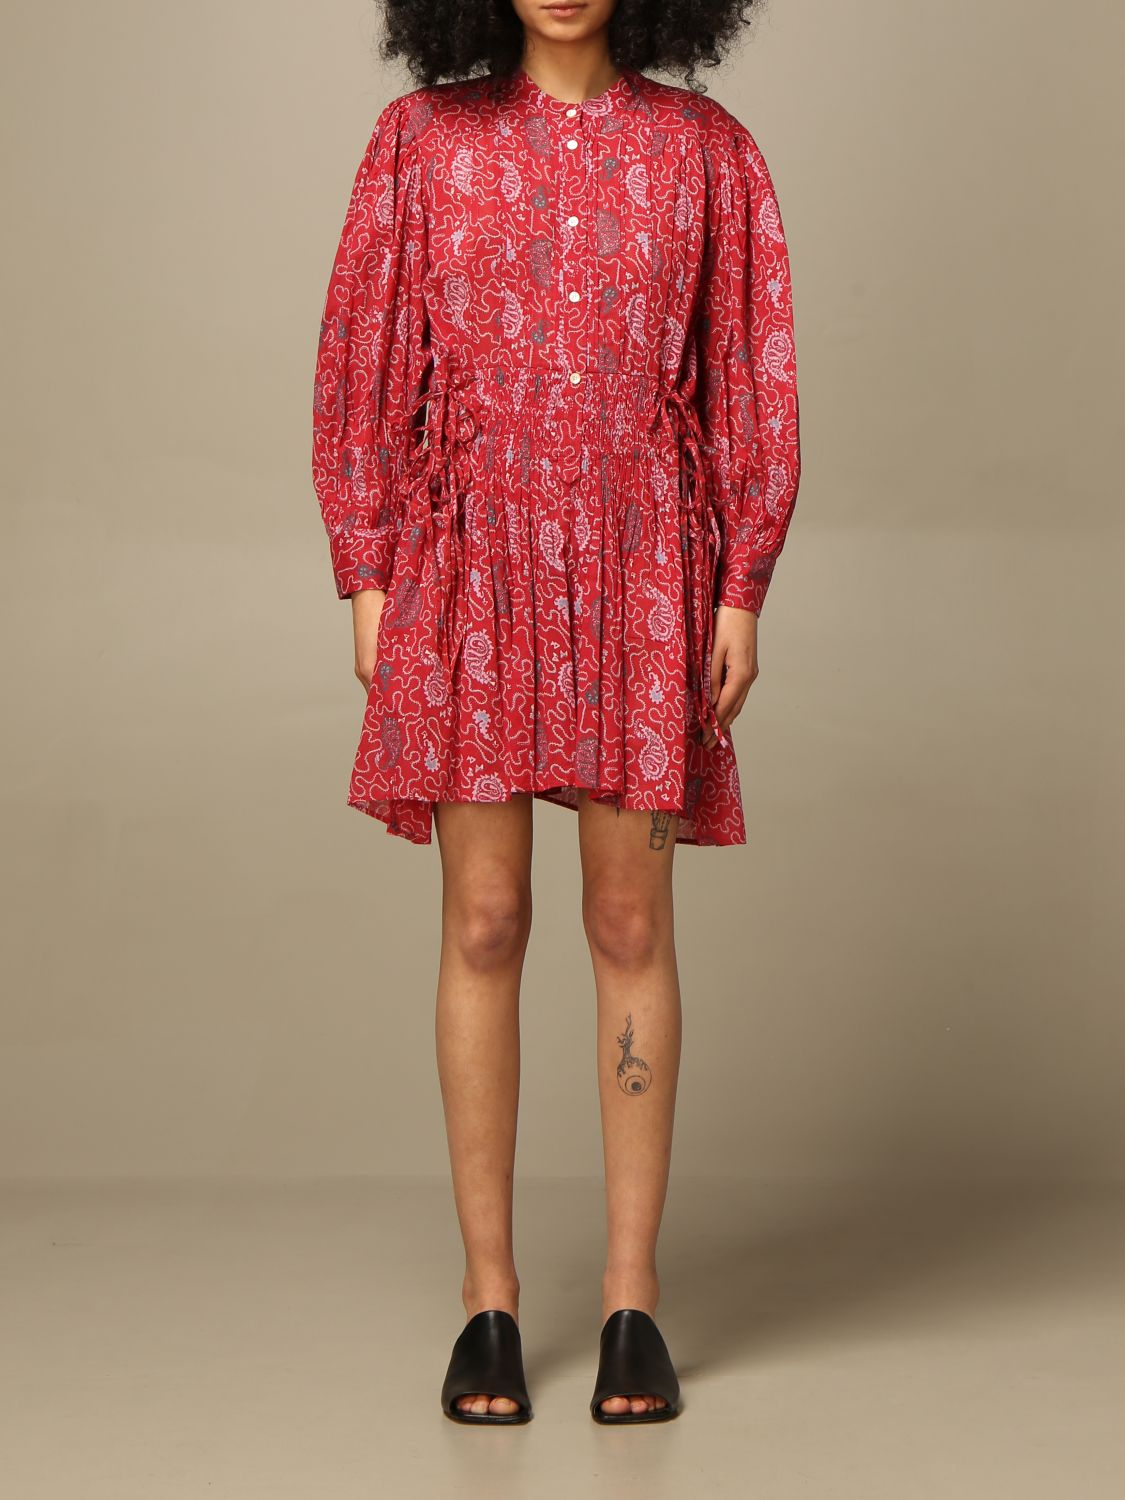 Pigment folkeafstemning bringe handlingen ISABEL MARANT ETOILE: short dress in patterned cotton - Red | Isabel Marant  Etoile dress RO186521P031E online on GIGLIO.COM